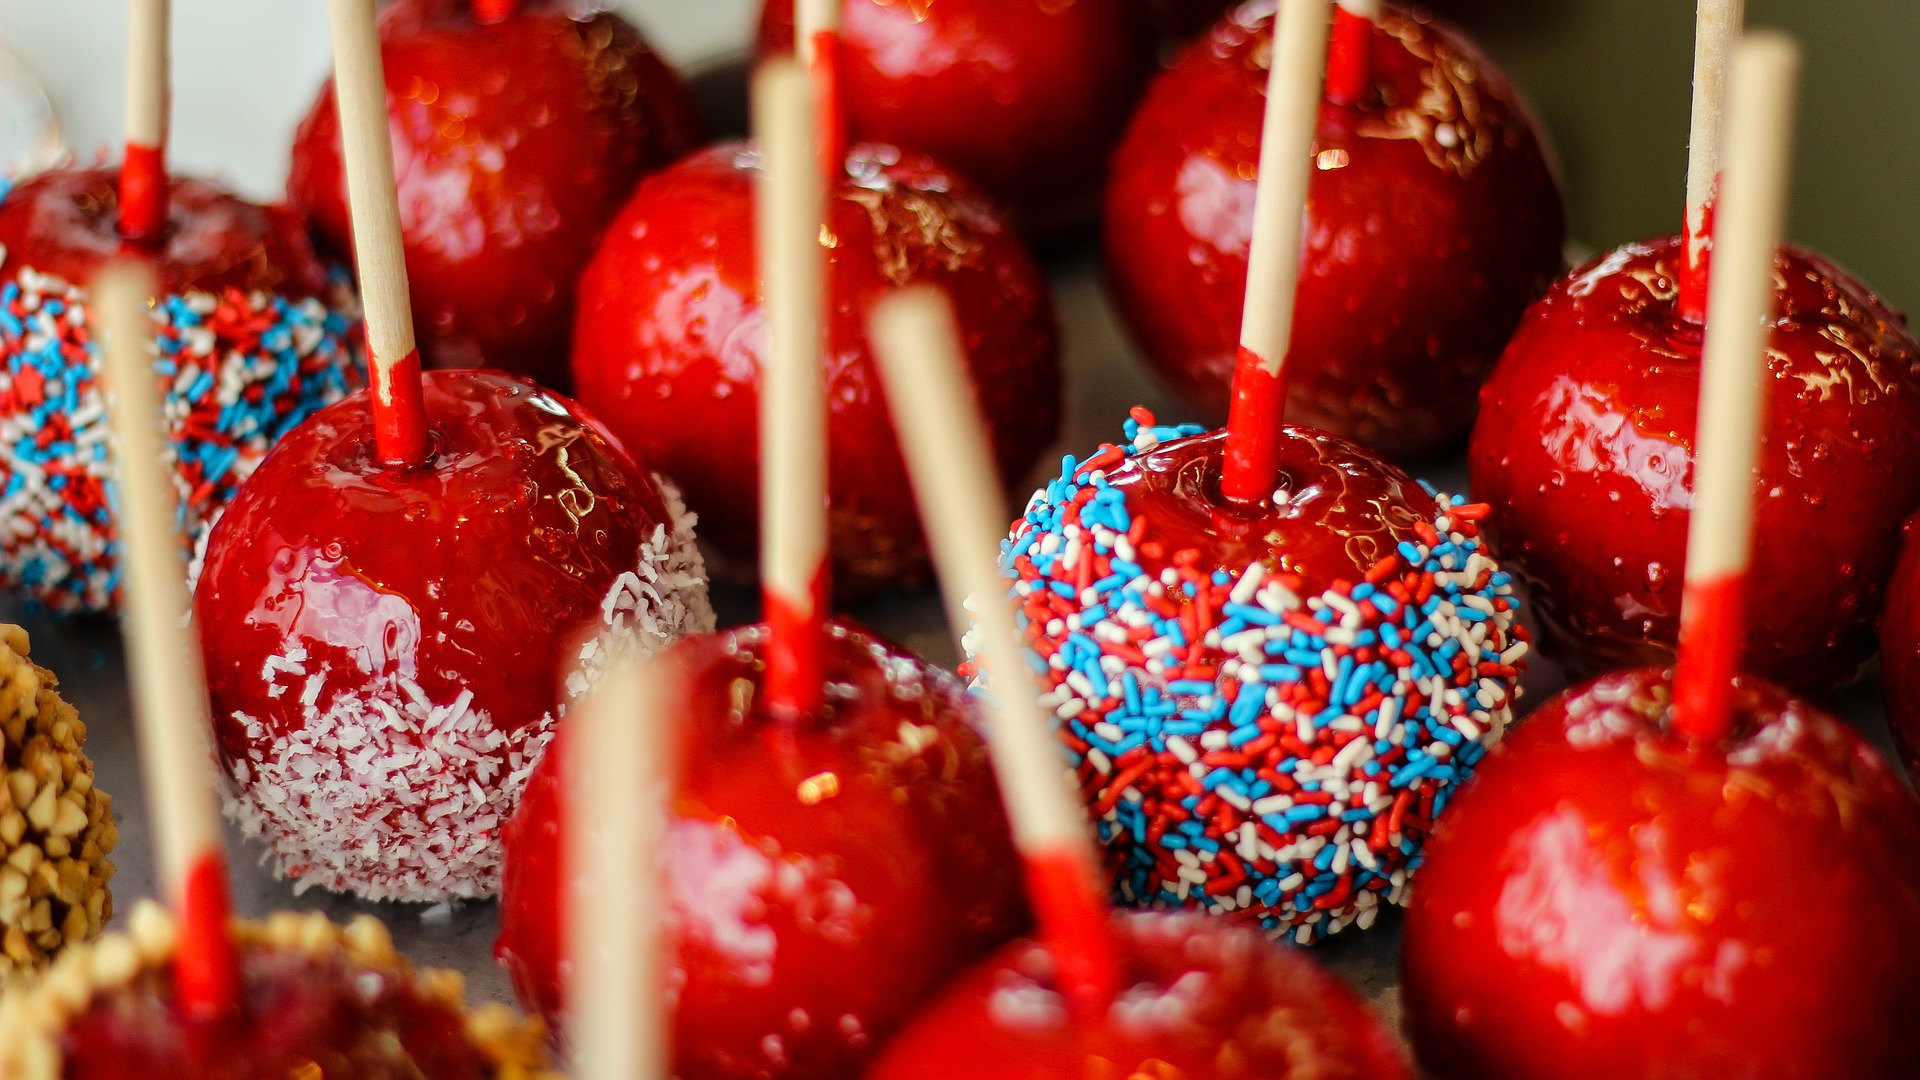 Candy apples, czyli jabłka w polewie toffi na Halloween. - trick or treat